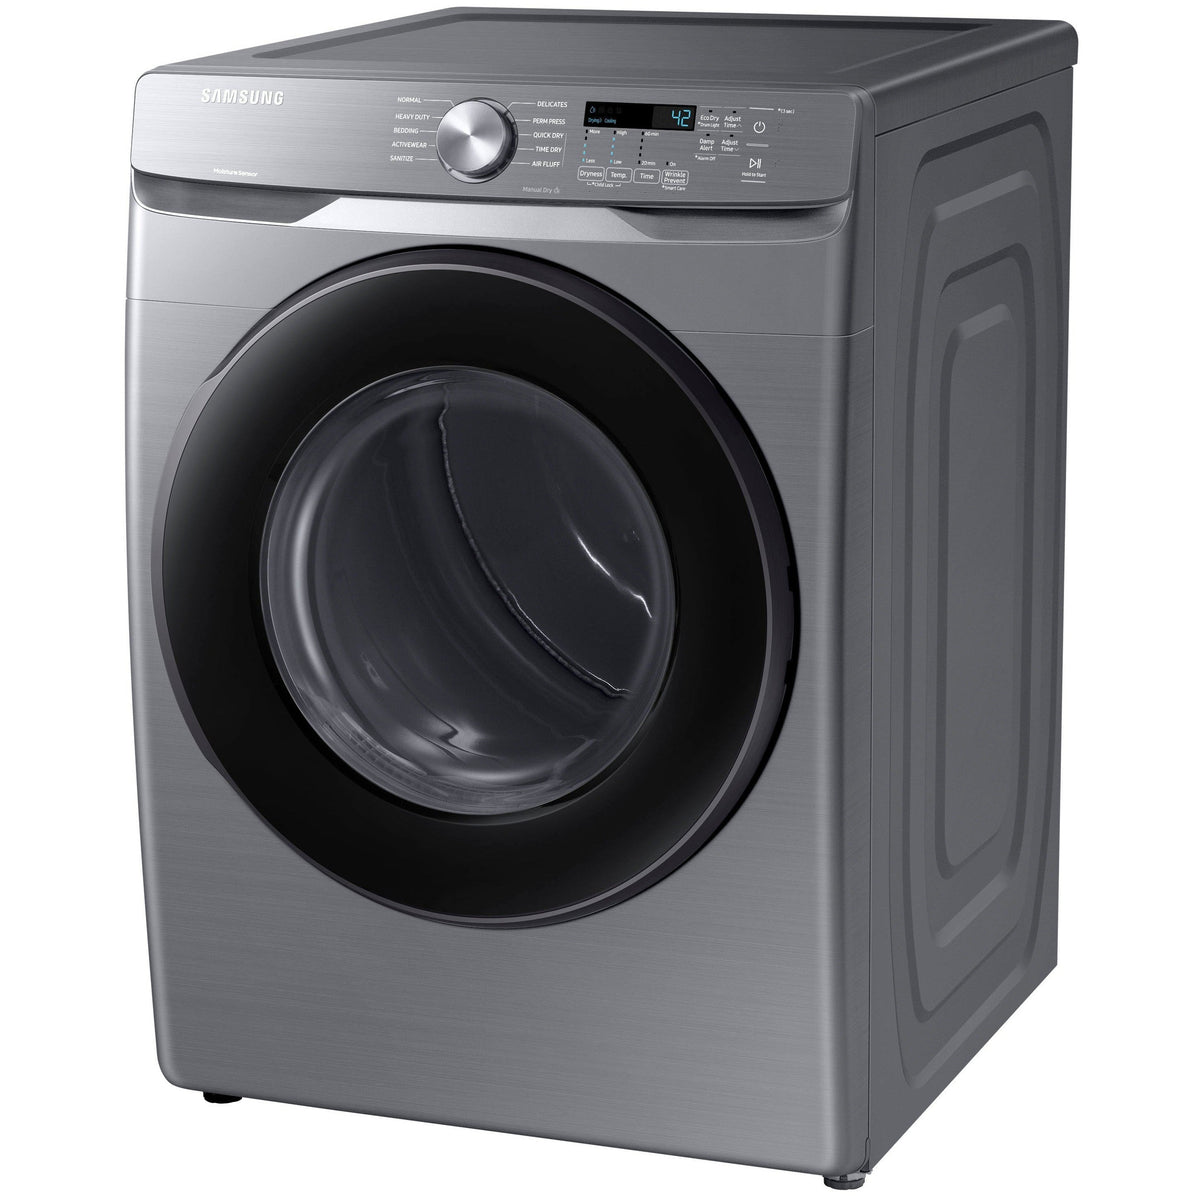 SAMSUNG DVE45R6100P/A3 7.5 Cu. Ft. Stackable Electric Dryer - Platinum